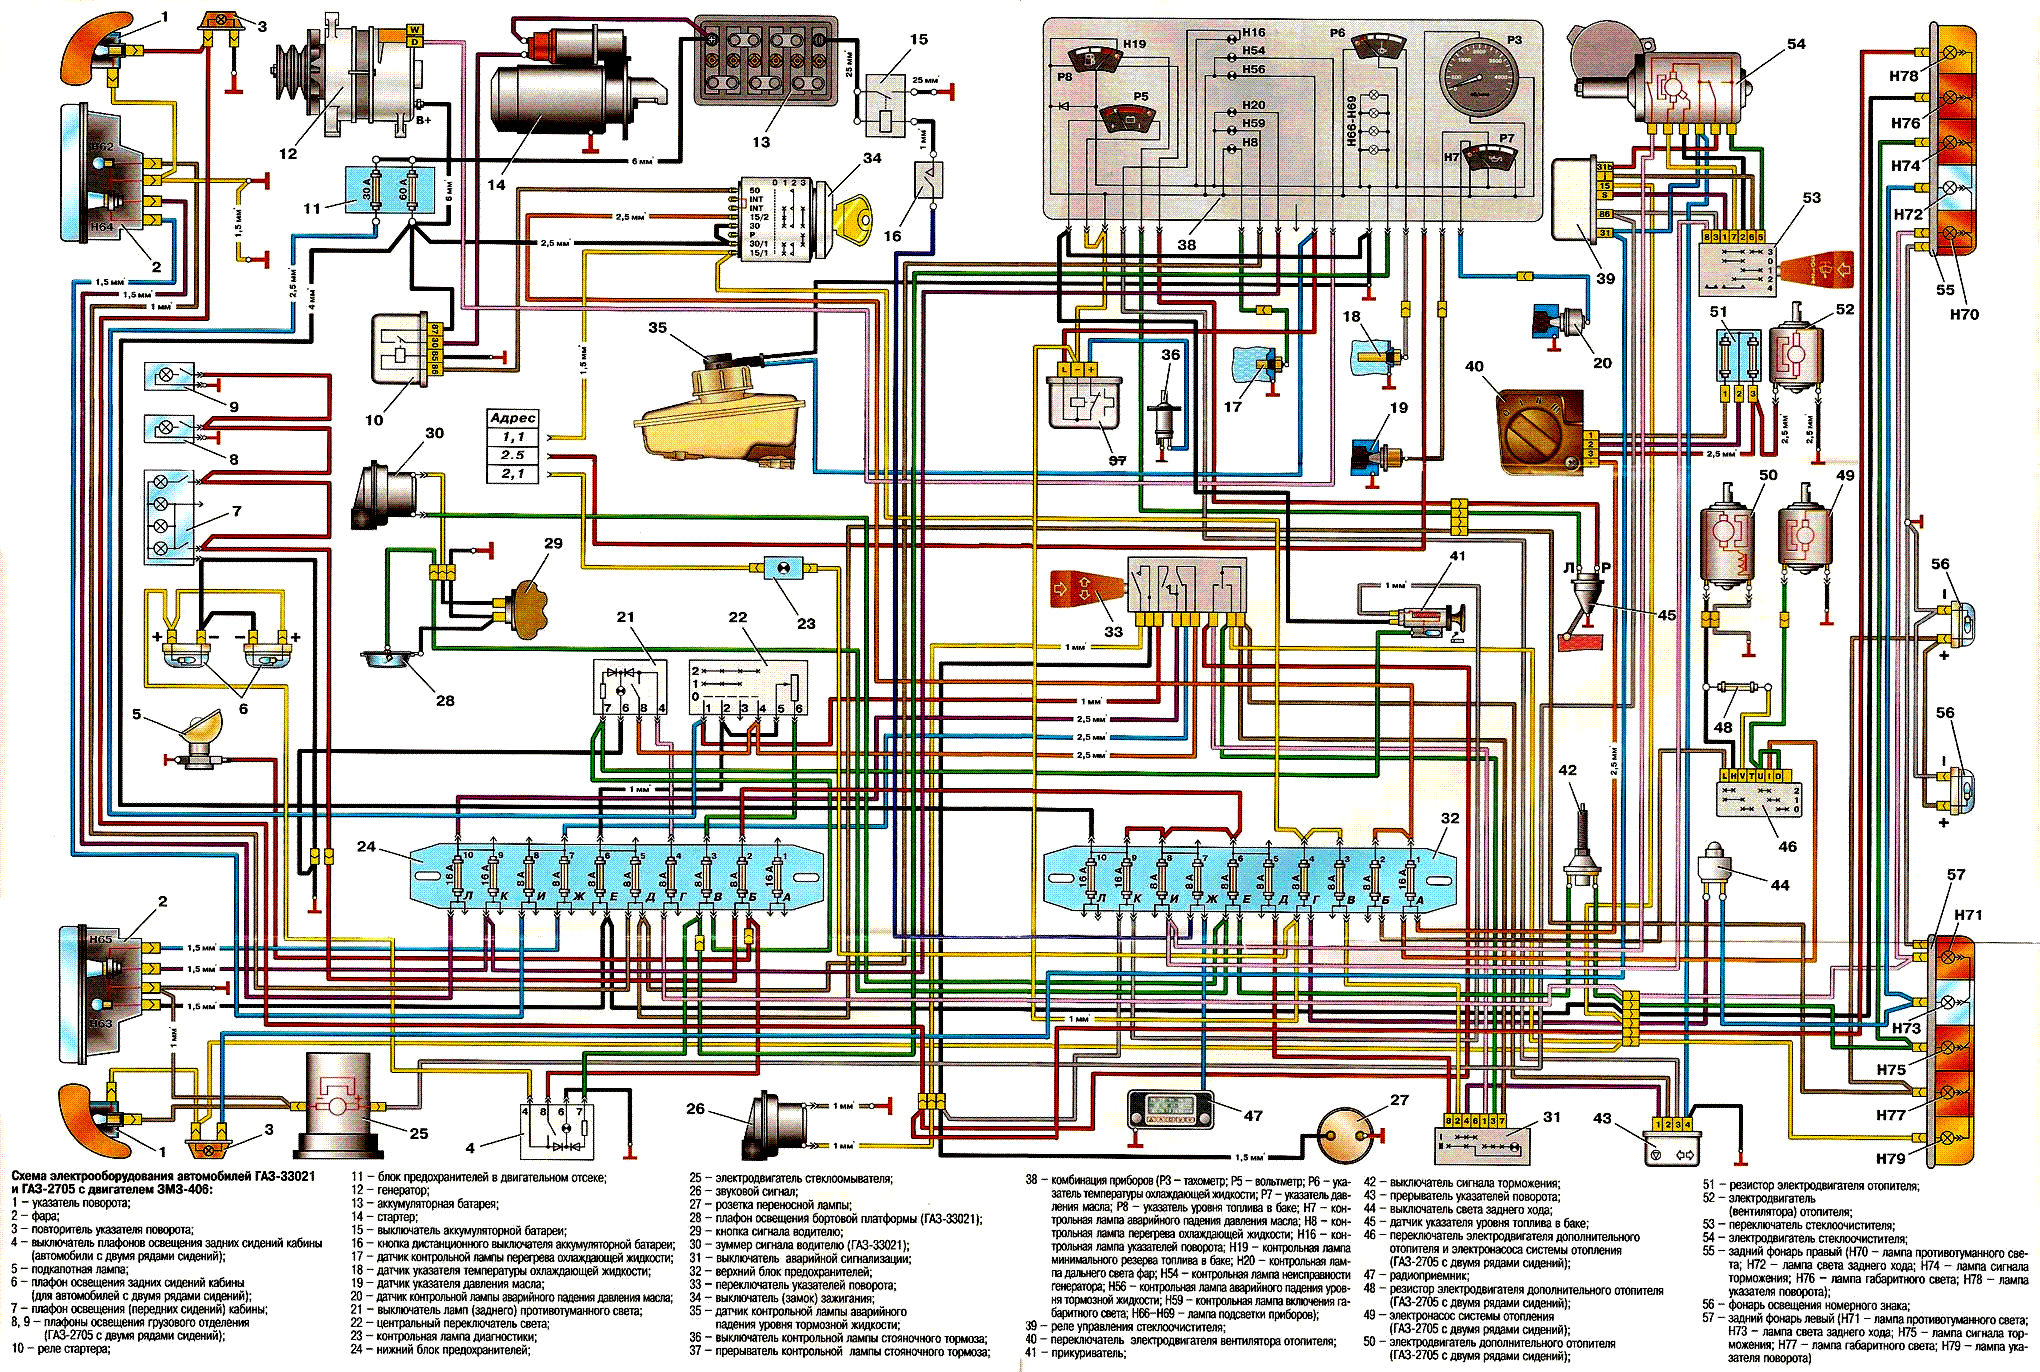 Схема электропроводки газель 402 двигатель: особенности монтажа проводки своими руками, втдео, фото, инструкция